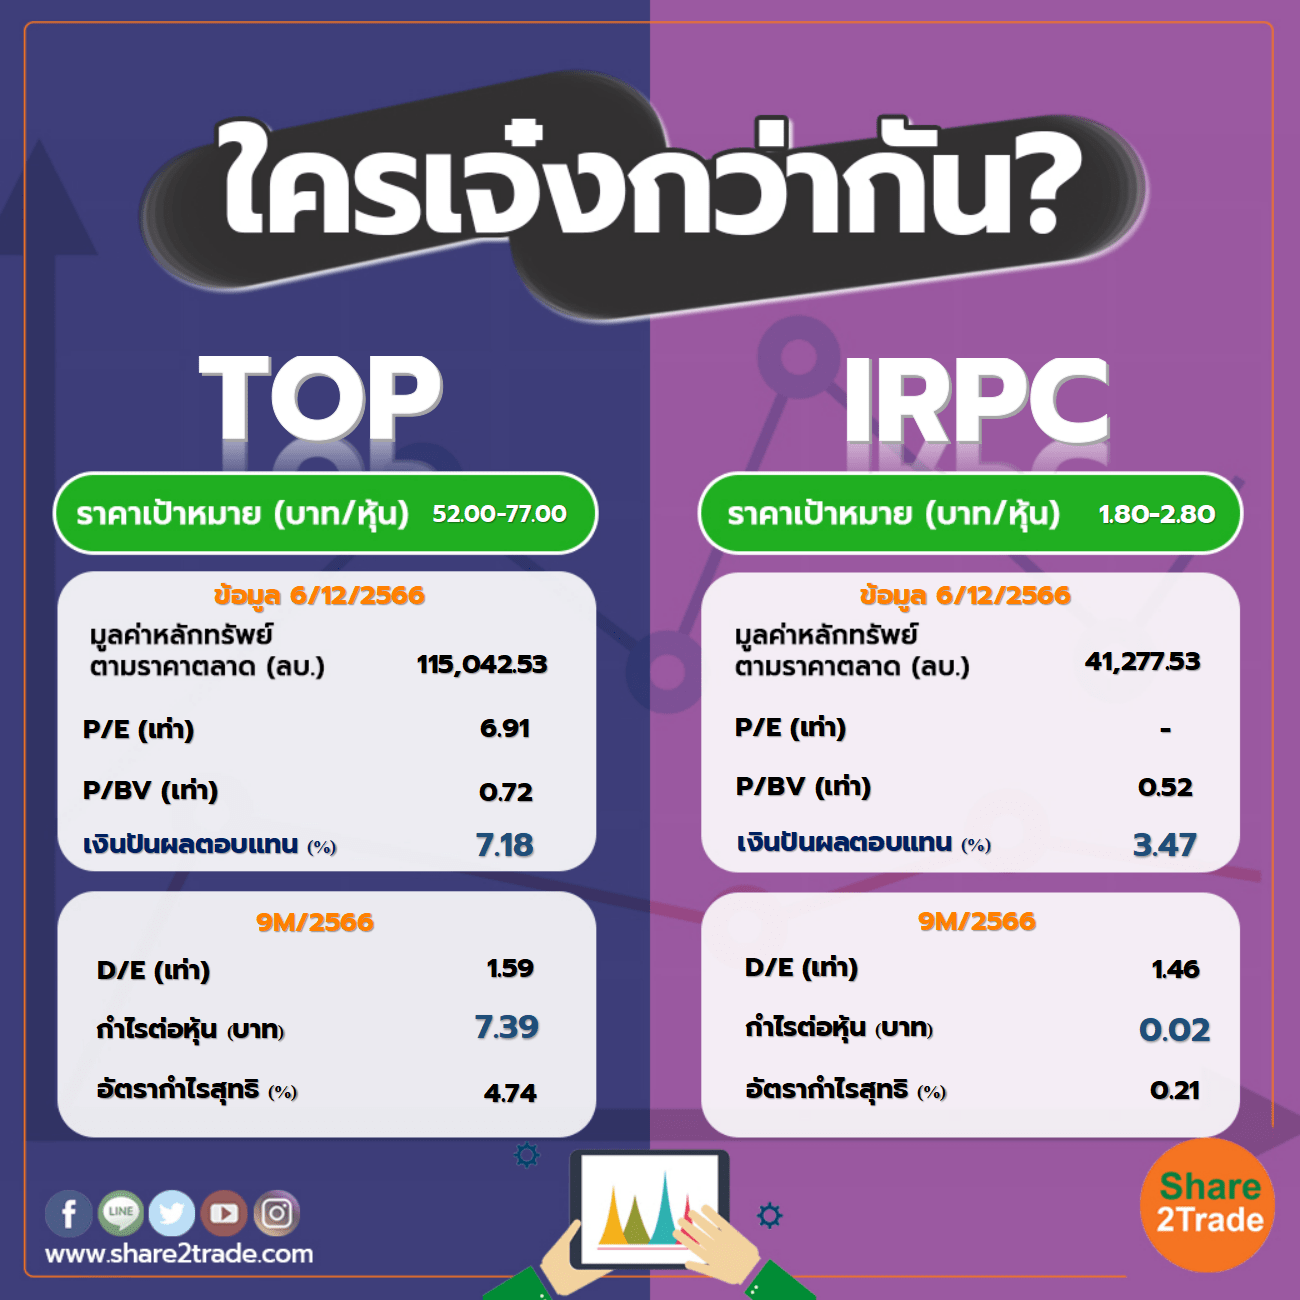 ใครเจ๋งกว่ากัน "TOP" VS "IRPC"